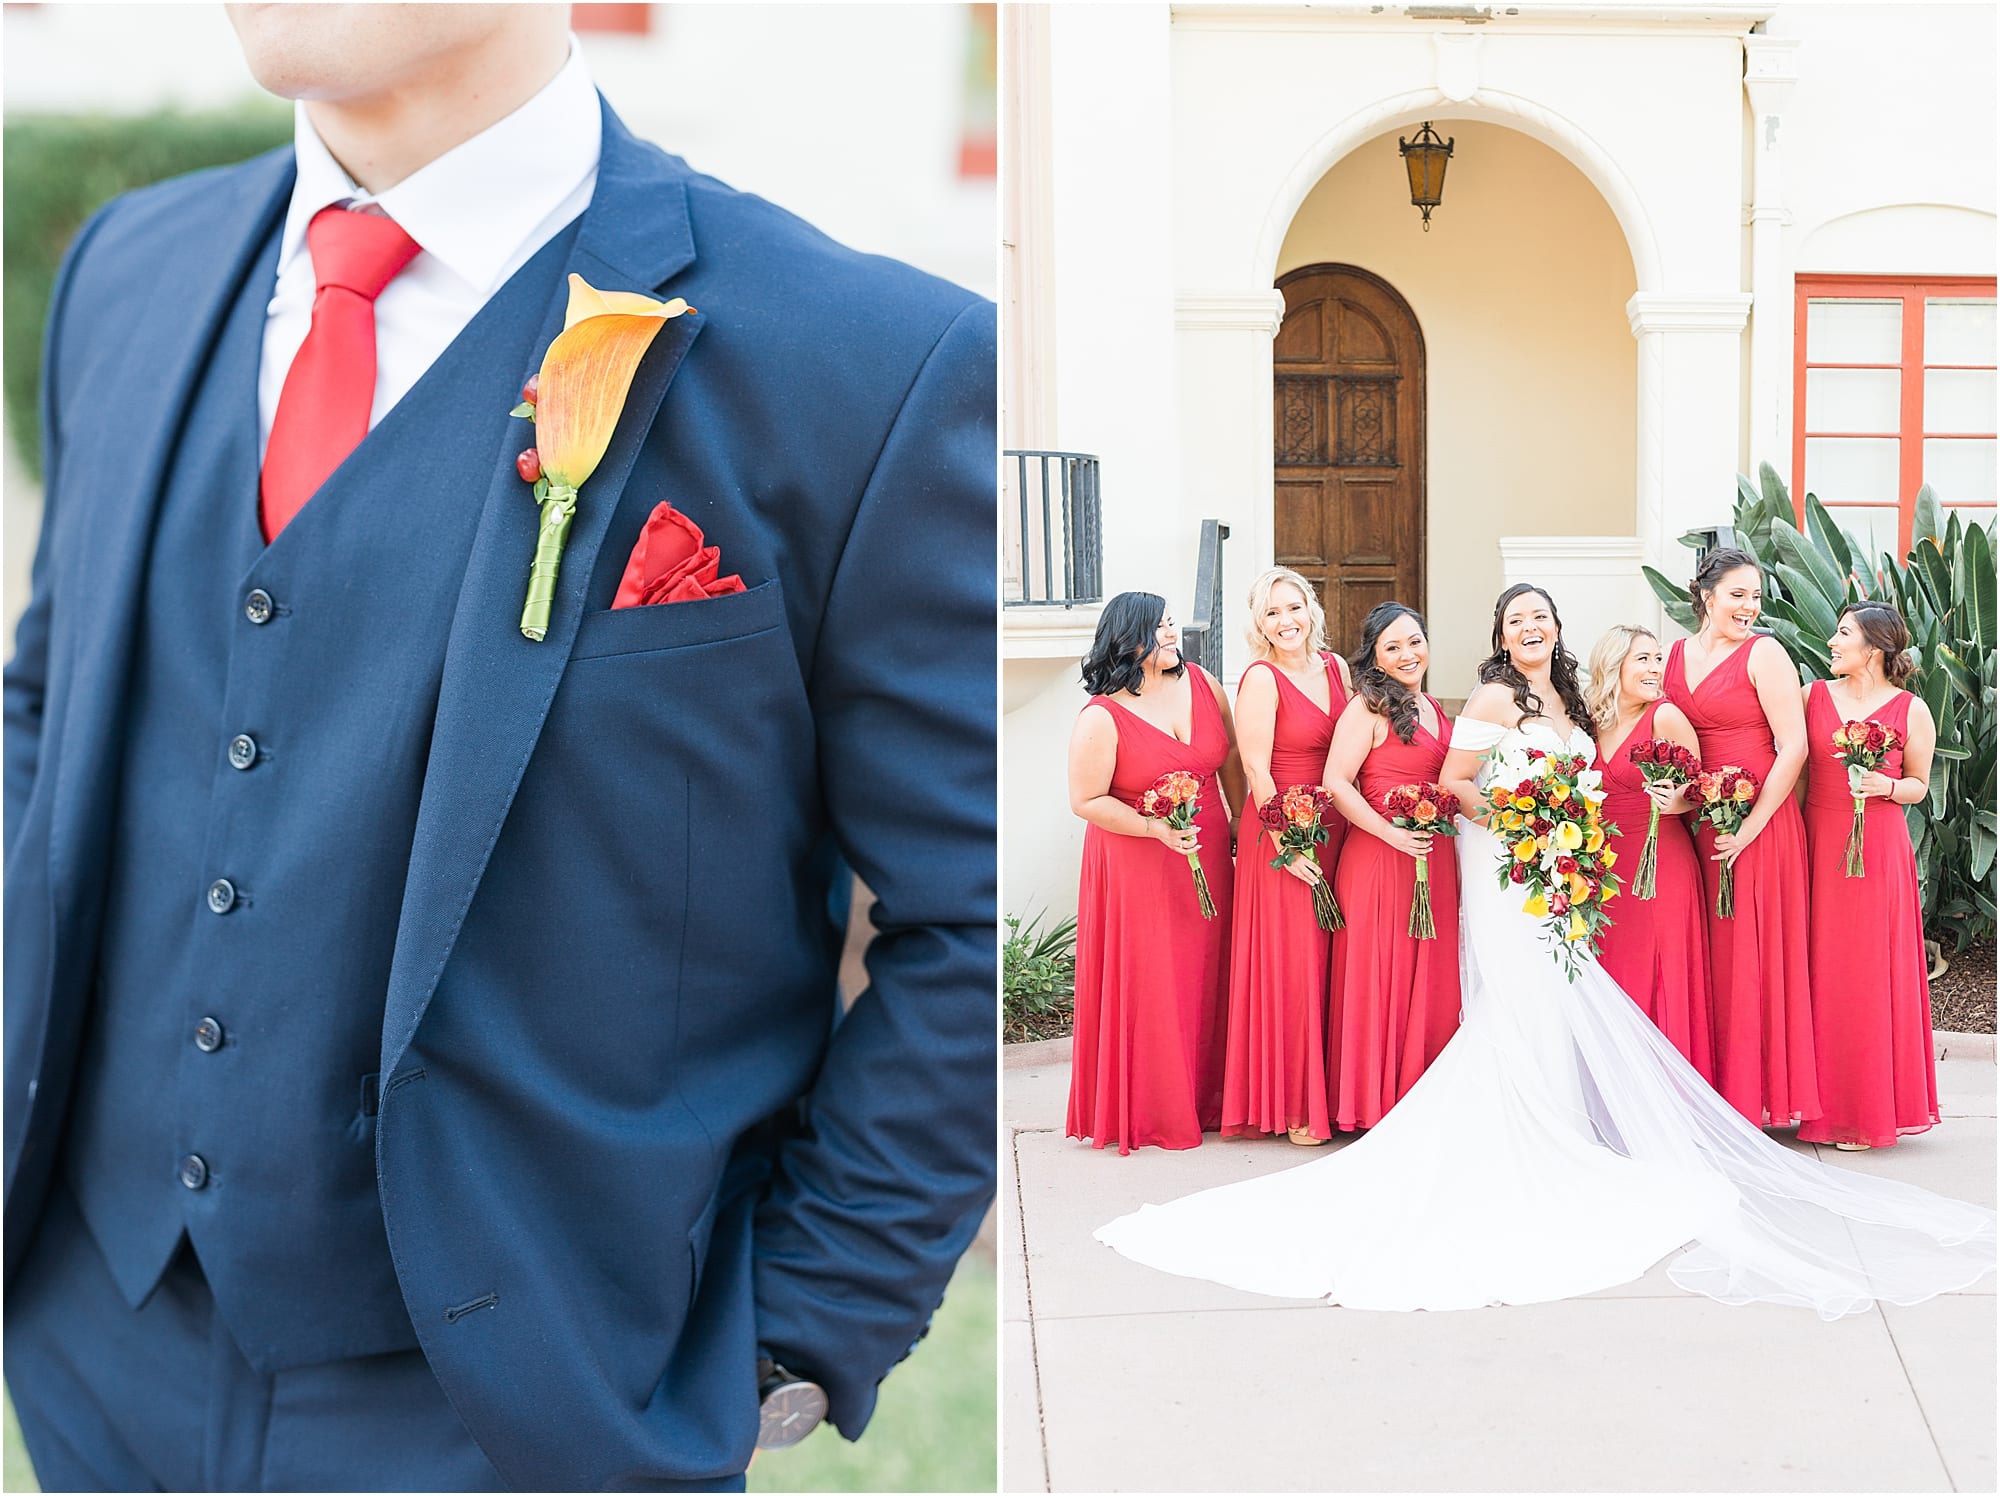 Spanish inspired Wedding at Muckenthaler Mansion | Muckenthaler cultural center